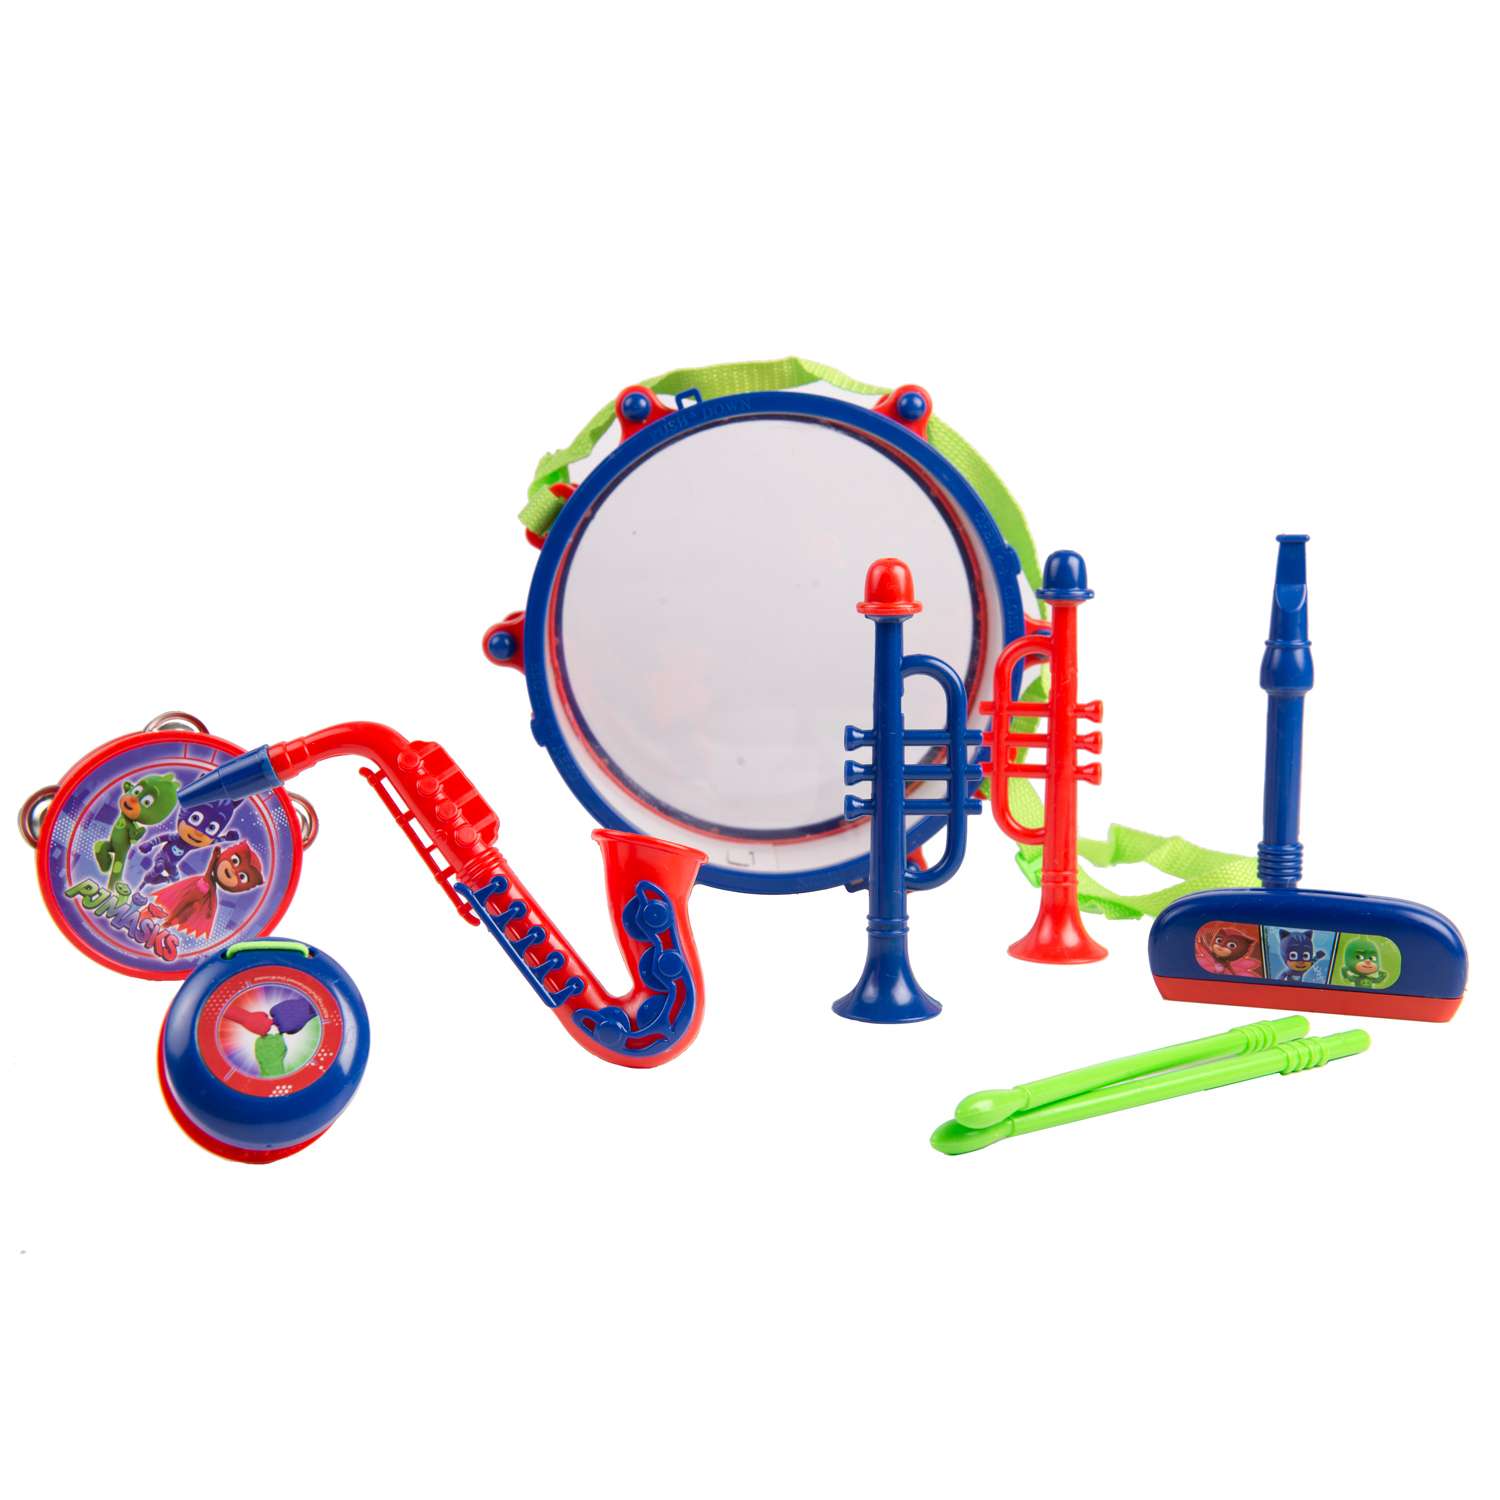 Набор музыкальных инструментов PJ masks с барабаном 33216 - фото 1